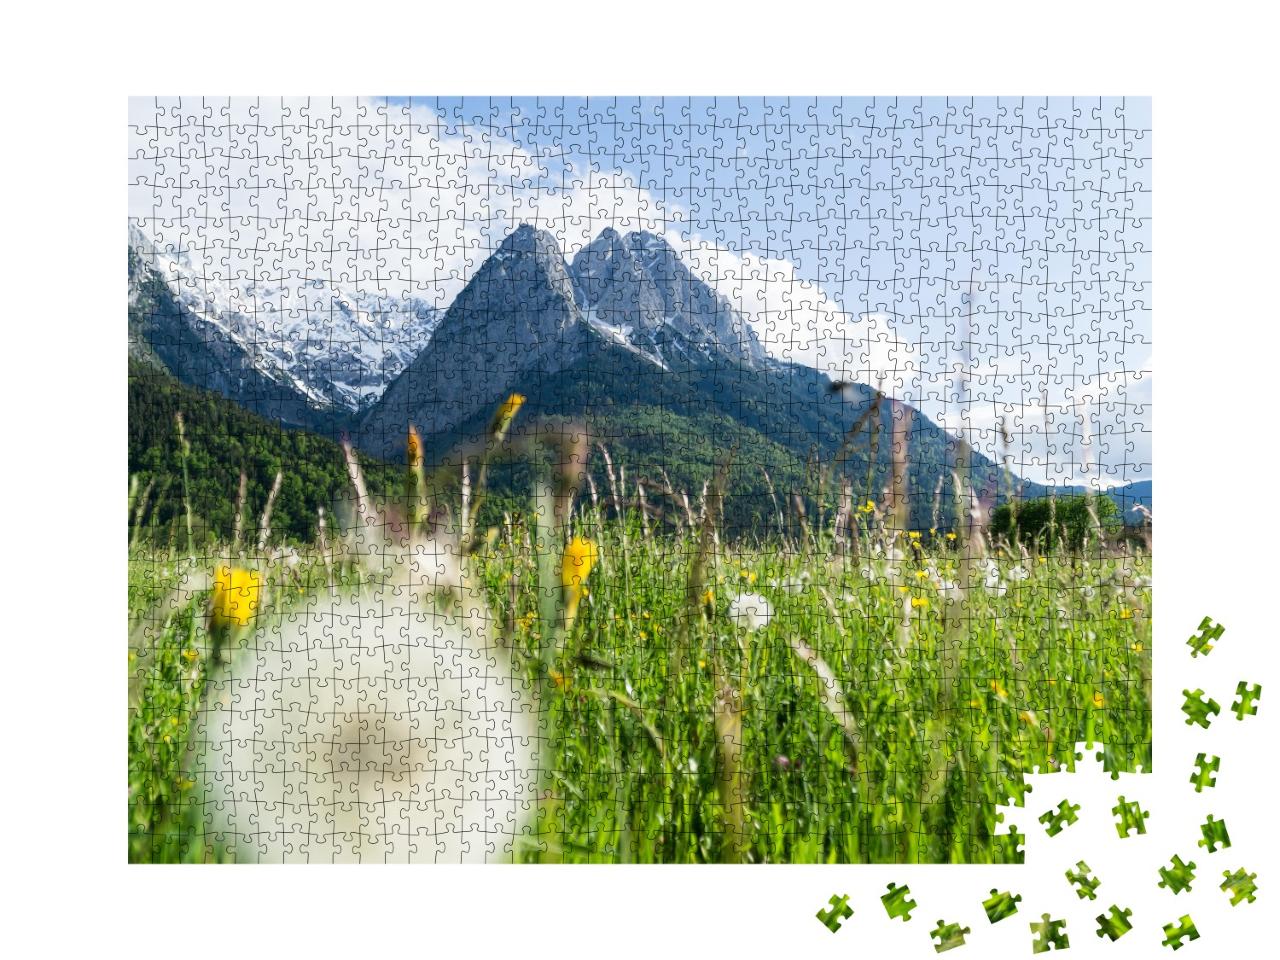 Puzzle de 1000 pièces « La Zugspitze en prairies fleuries »